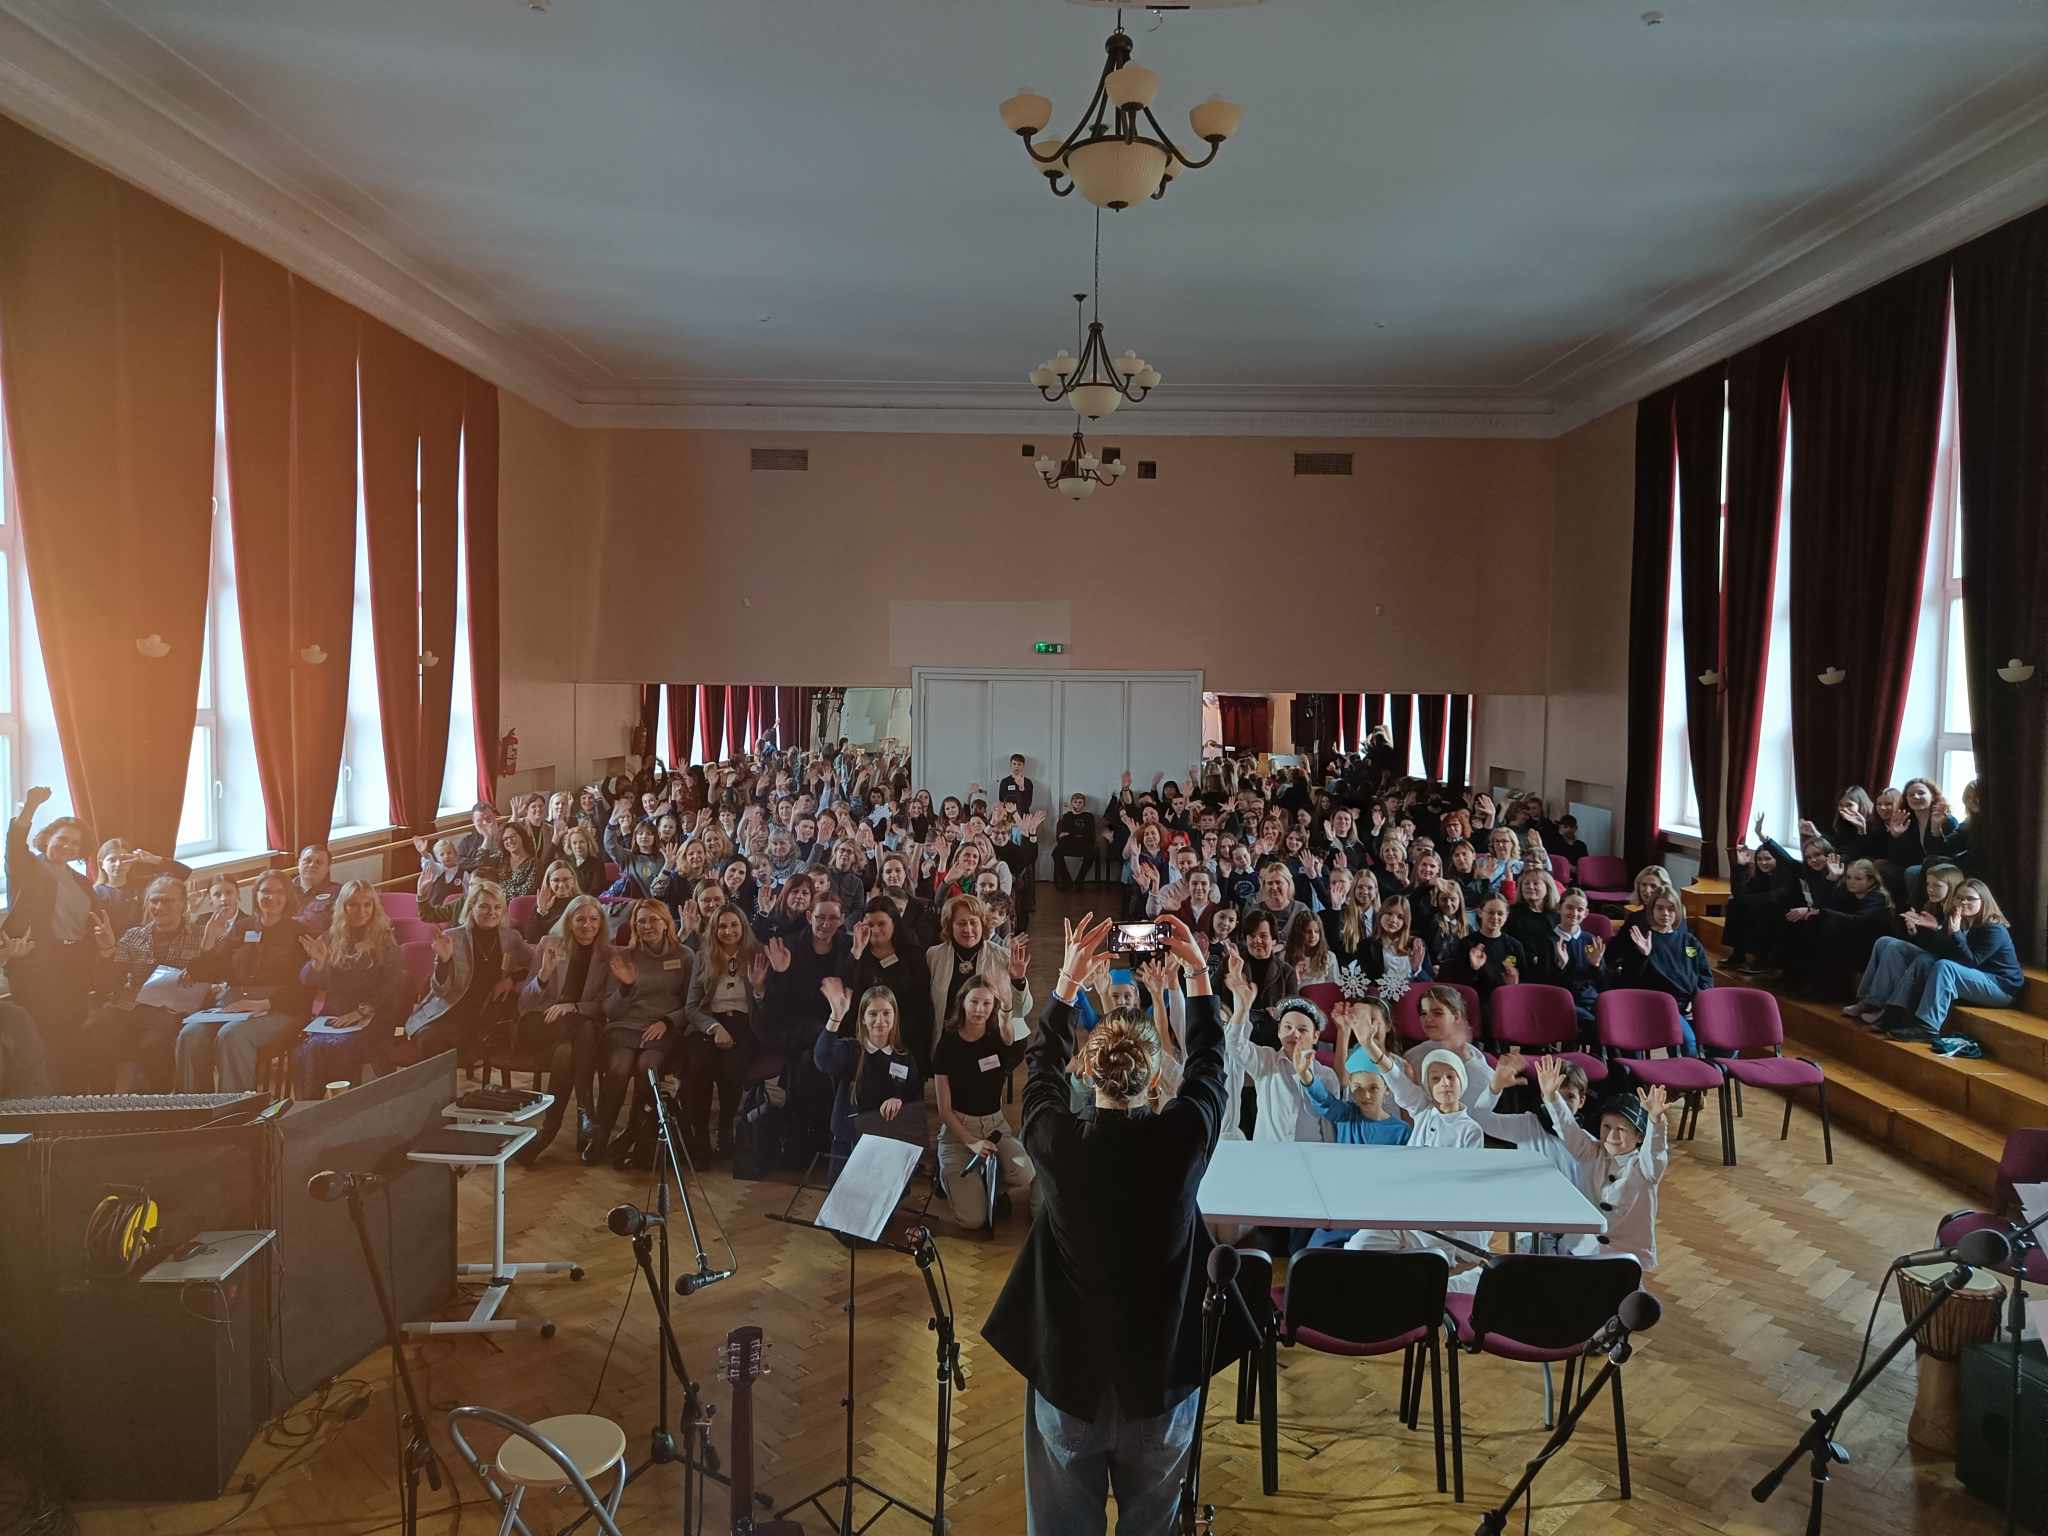 Dalyvavome Kauno miesto bendrojo ugdymo mokyklų 3-8 klasių mokinių užsienio (anglų) kalbos meninio skaitymo konkurse „Blow, Blow the Winter Wind“ KTU Vaižganto progimnazijoje.